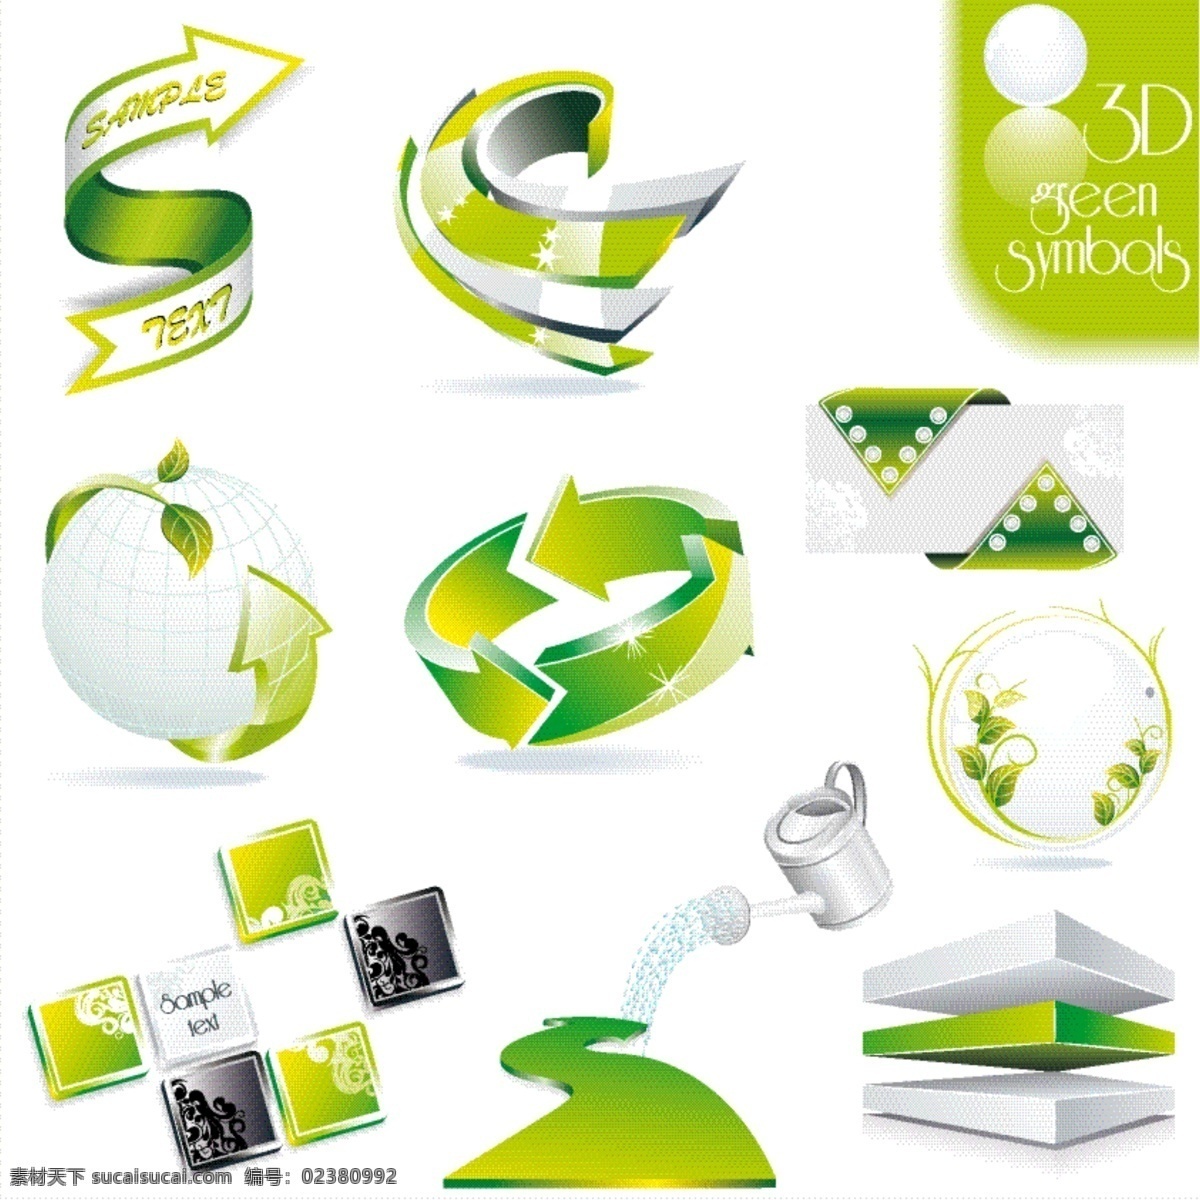 套 绿色 立体 图标 矢量 3d 动感 方块 蜂巢 箭头 浇水 矢量素材 水晶质感 丝带 圆球 海报 其他海报设计